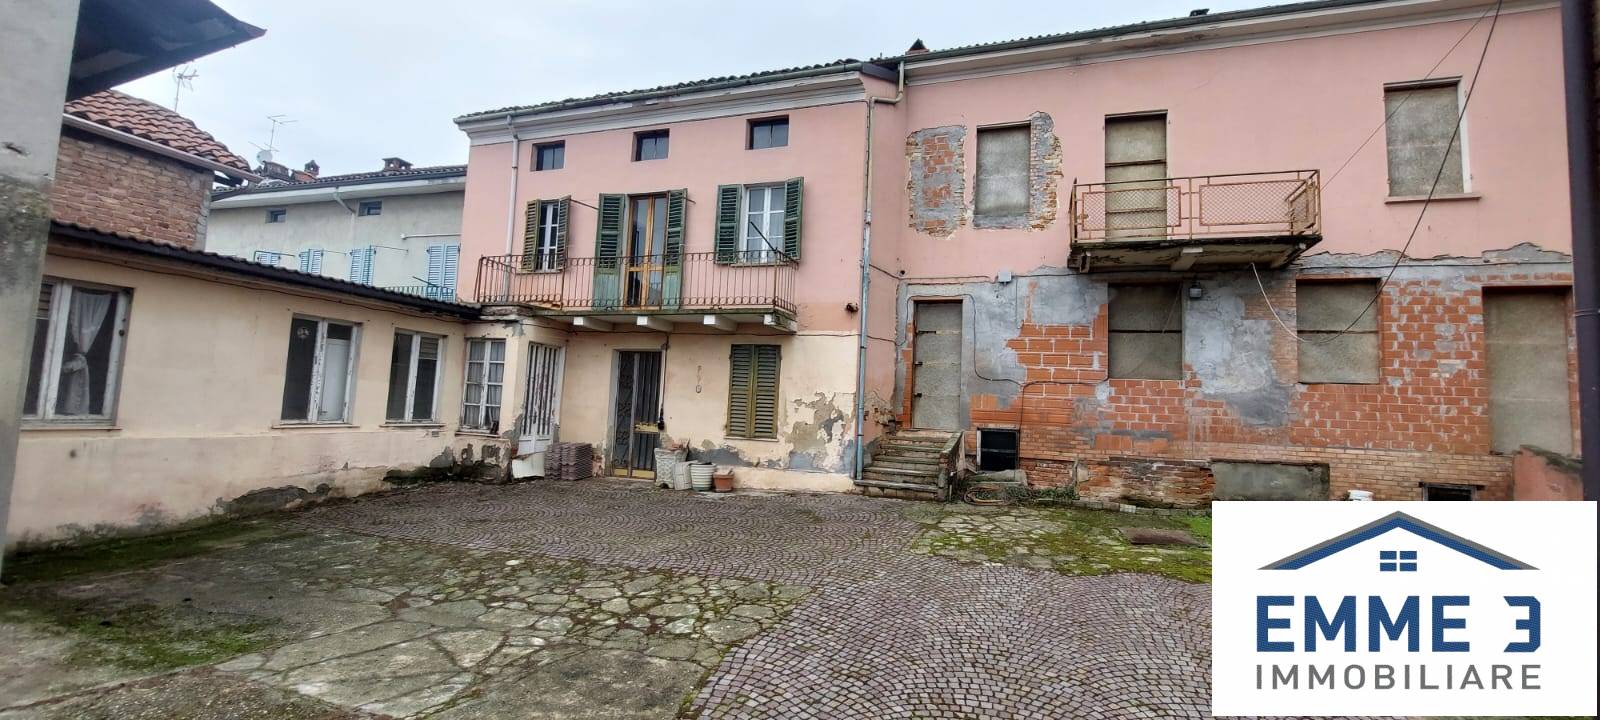 Villa Bifamiliare in vendita a San Salvatore Monferrato, 11 locali, prezzo € 65.000 | PortaleAgenzieImmobiliari.it